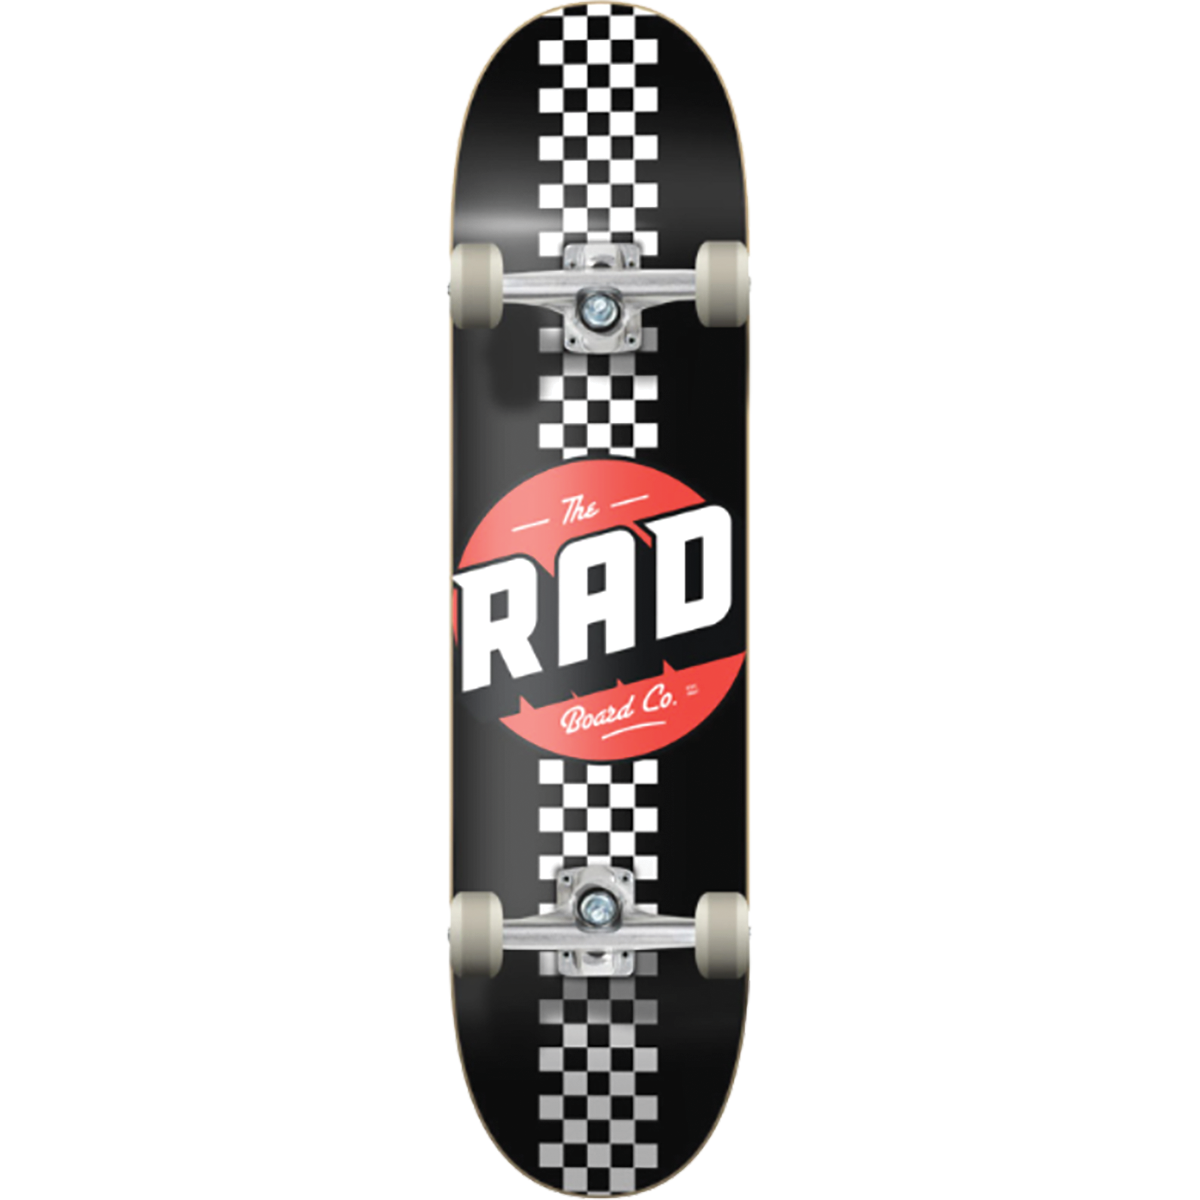 Rad Checker, Classic & Retro Complete Skateboards